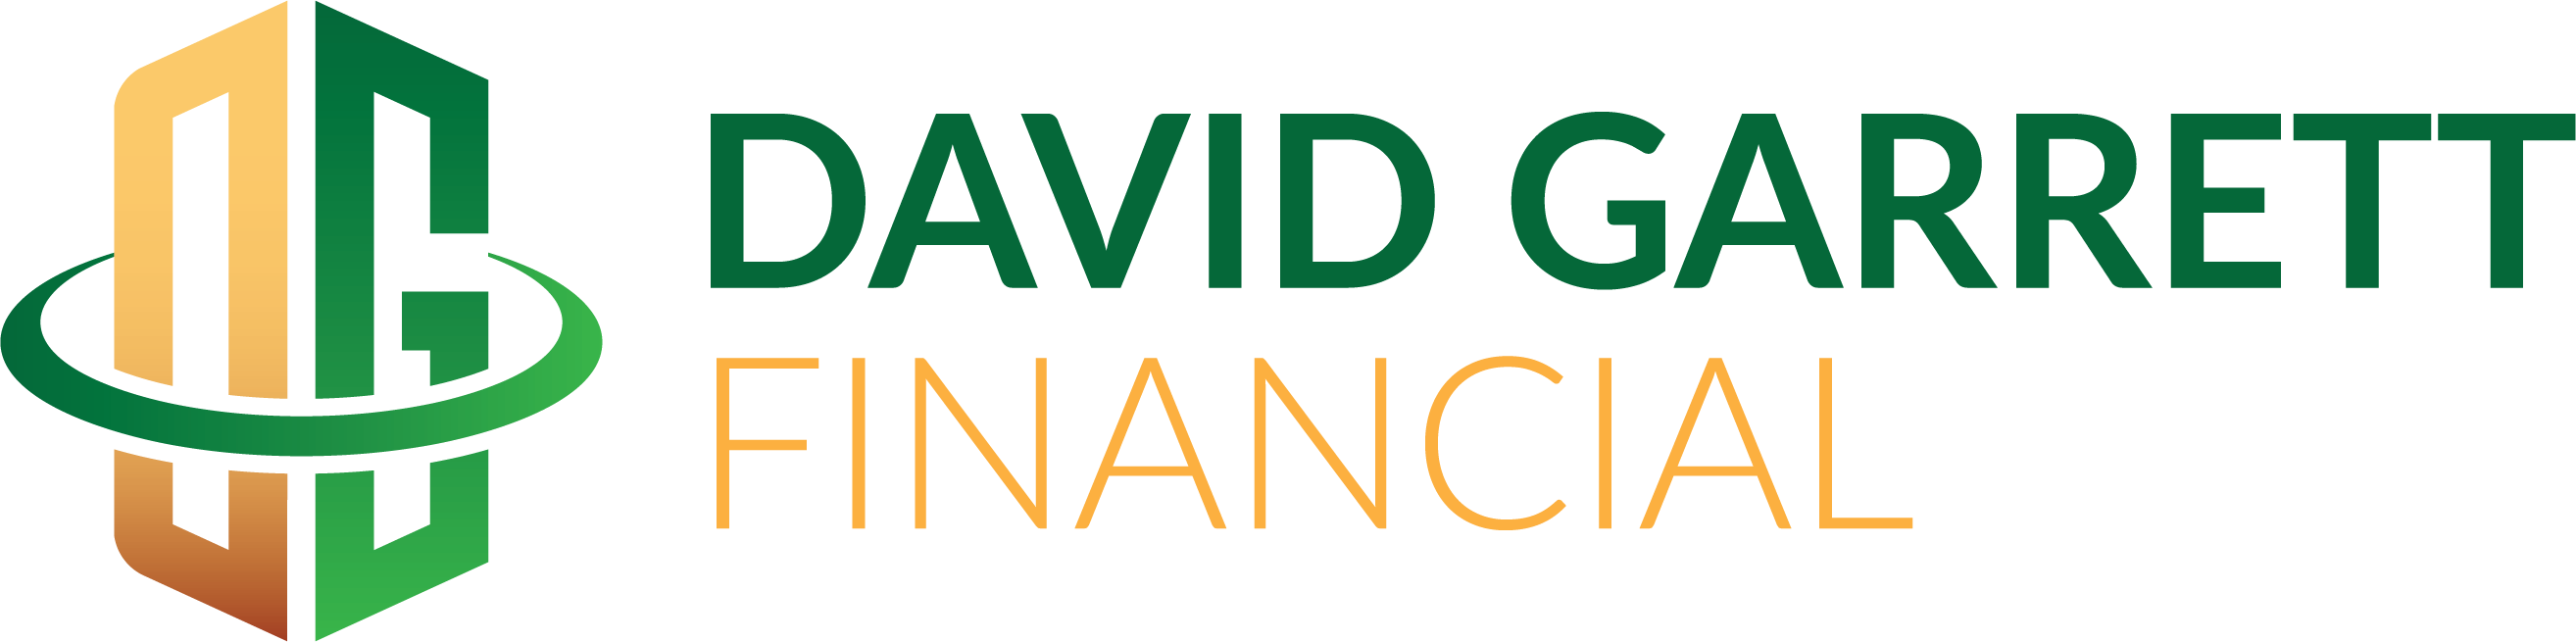 David Garrett Financial